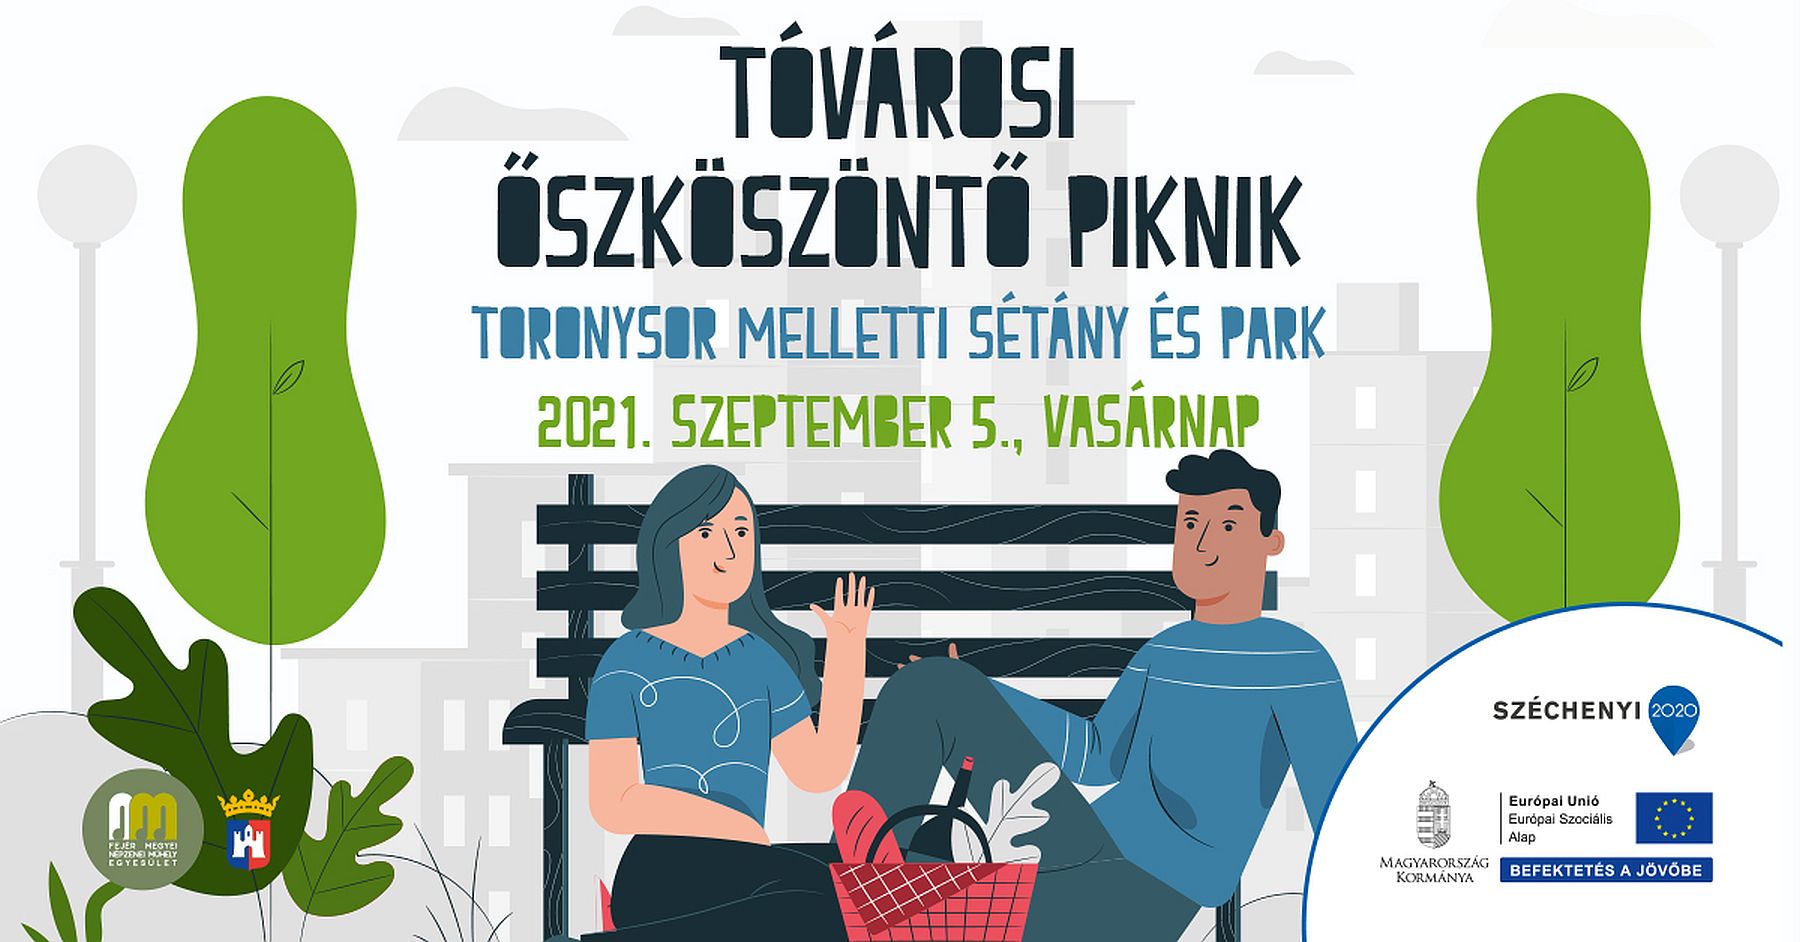 Vasárnap a Tóvárosban lesz őszköszöntő piknik Závodszky Noémivel és Gájer Bálinttal